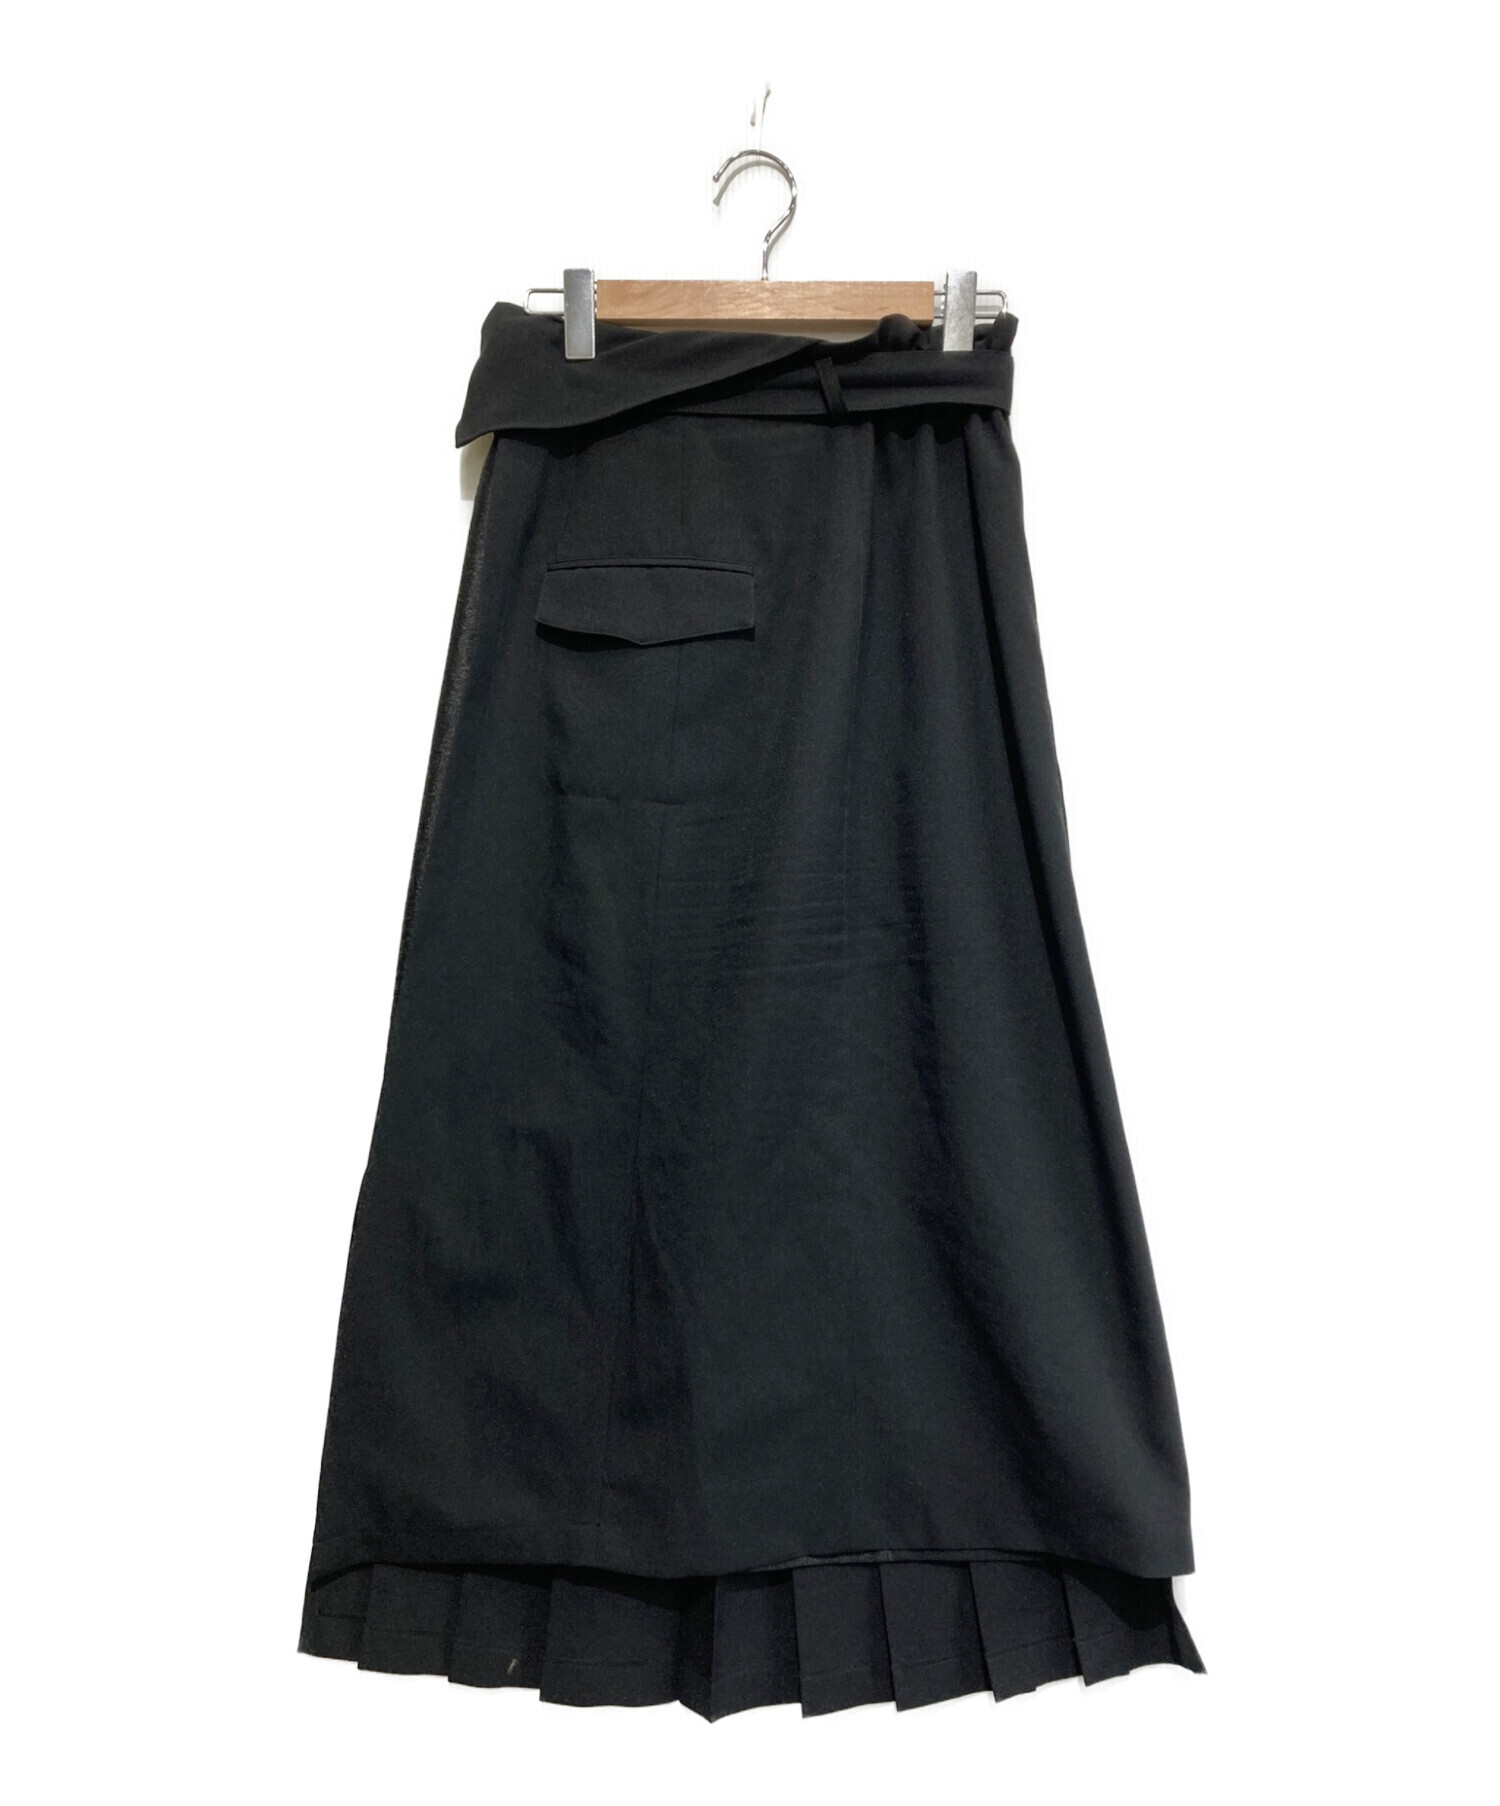 お得本物保証UNITED TOKYO メタルコンビハーフプリーツスカート スカート